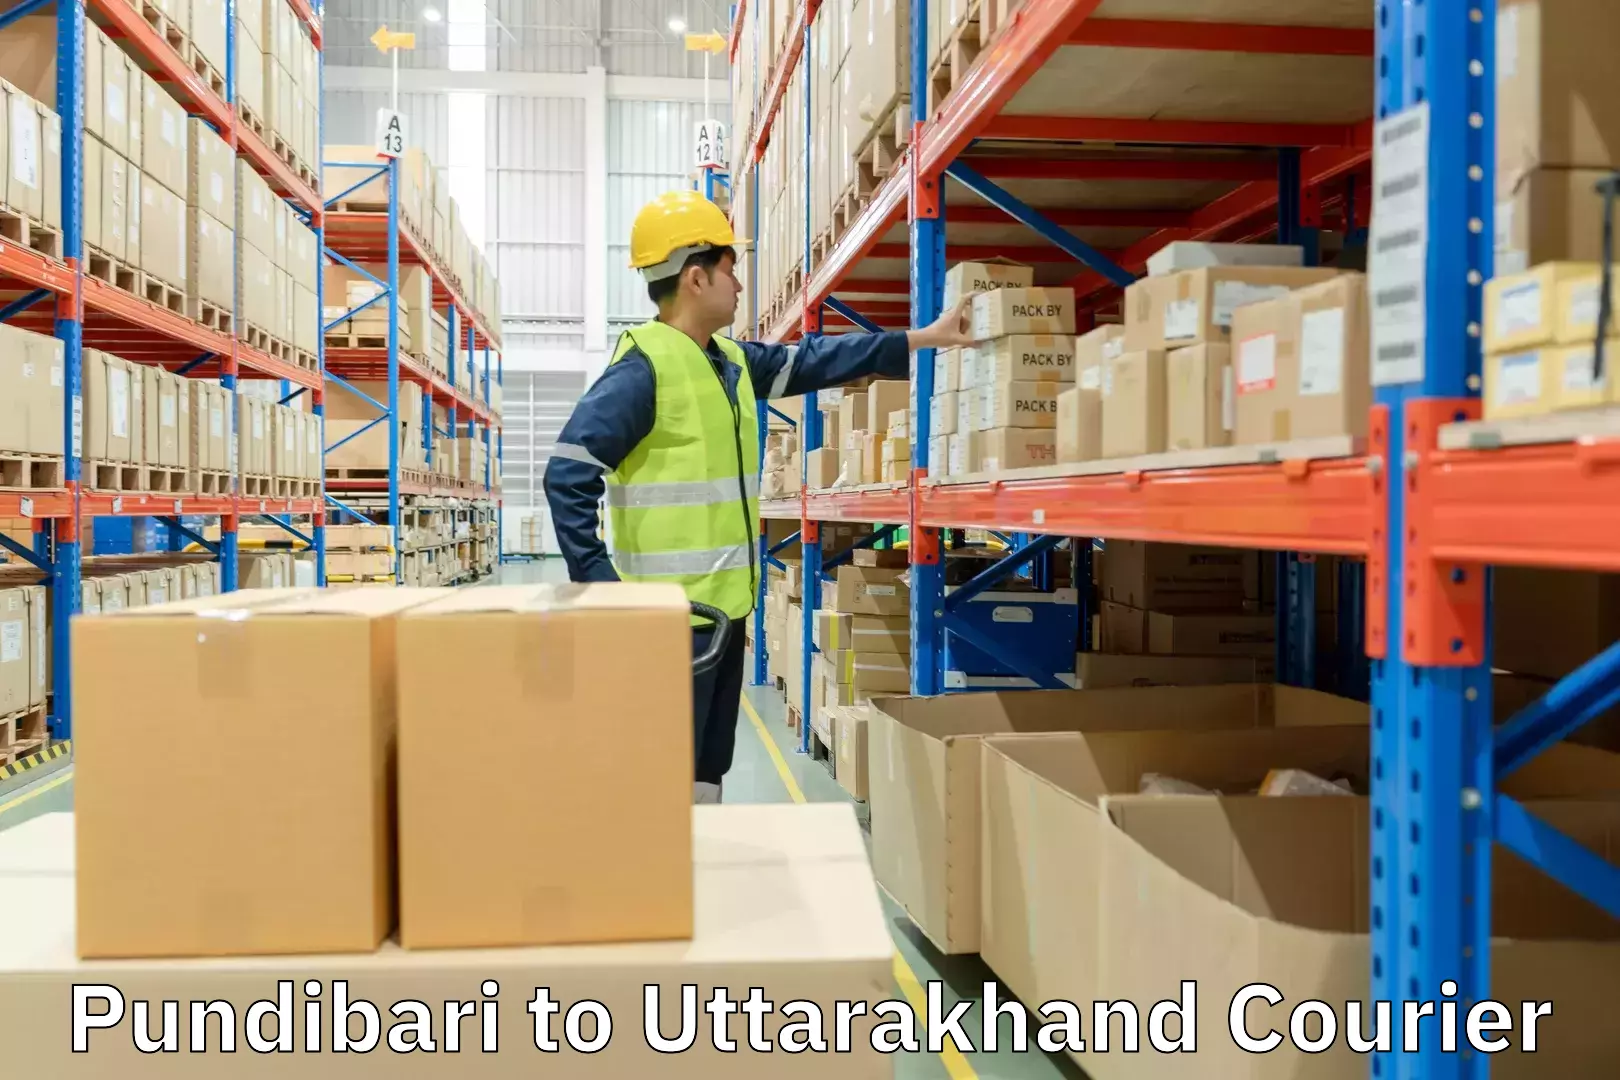 Urban courier service Pundibari to Uttarakhand